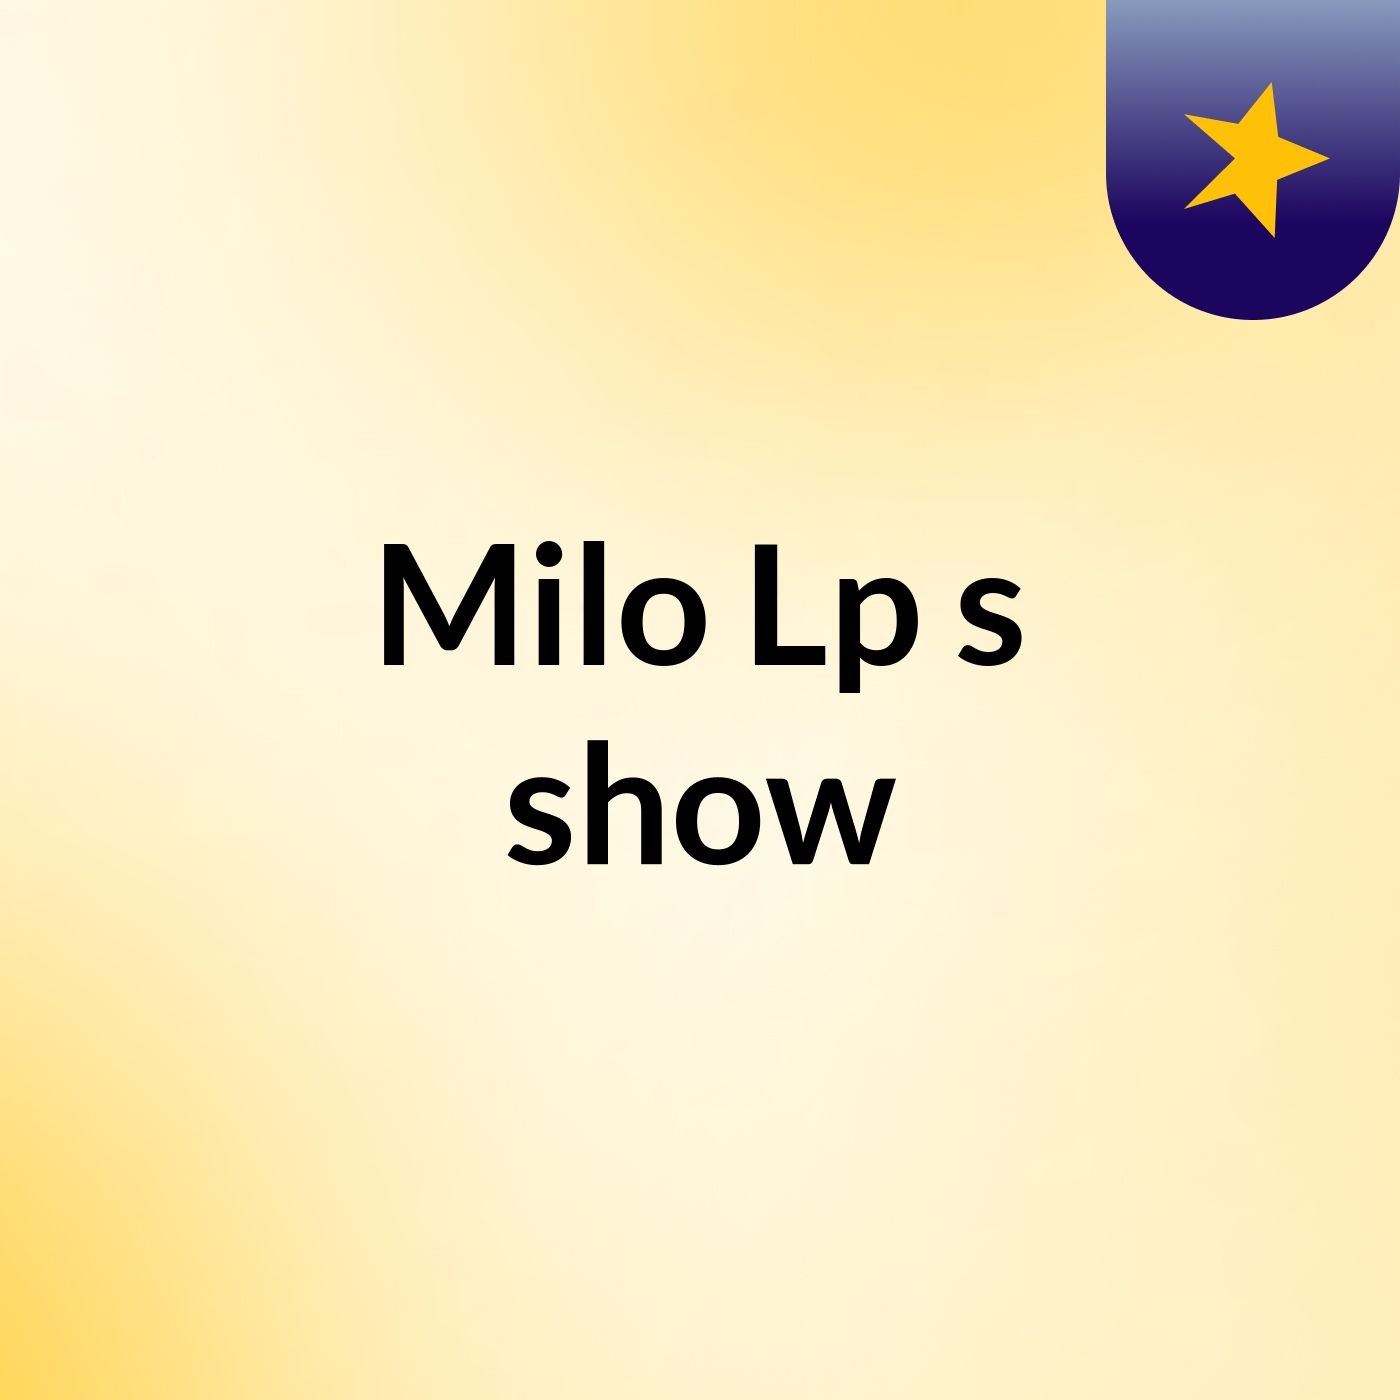 Milo Lp's show